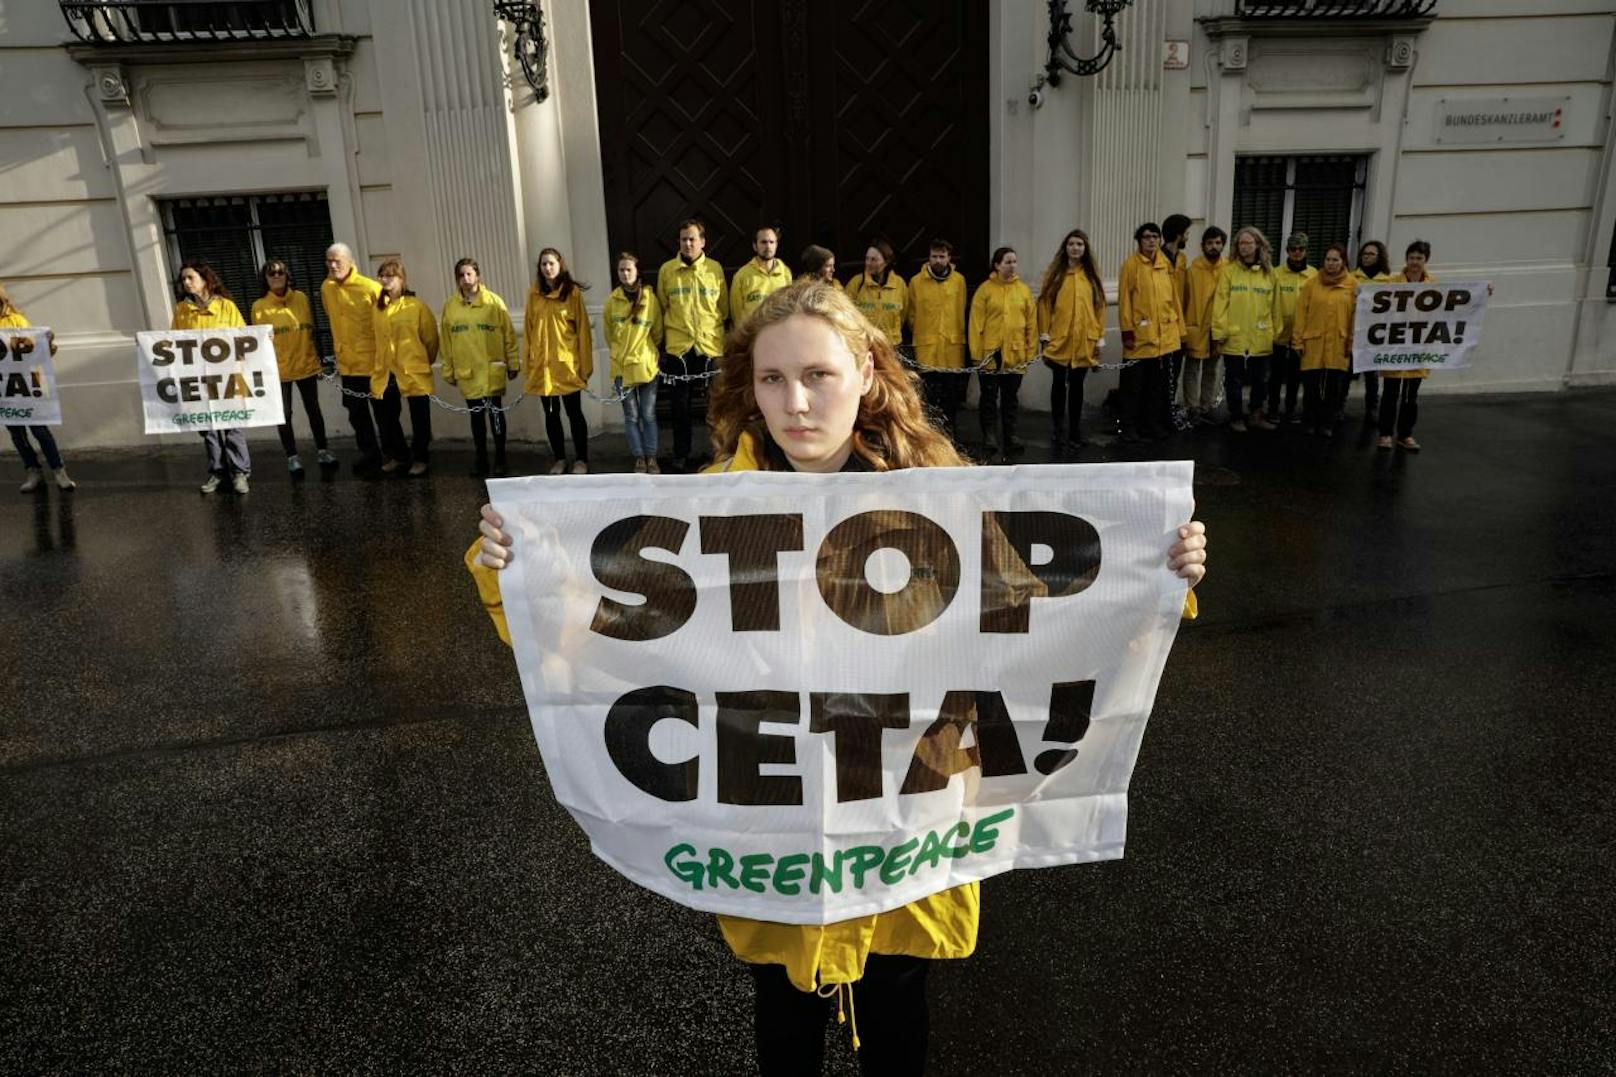 Sie haben sich an den Haupteingang des Gebäudes gekettet und demonstrieren mit ihrer friedlichen Sitz-Blockade dafür, CETA zu stoppen.